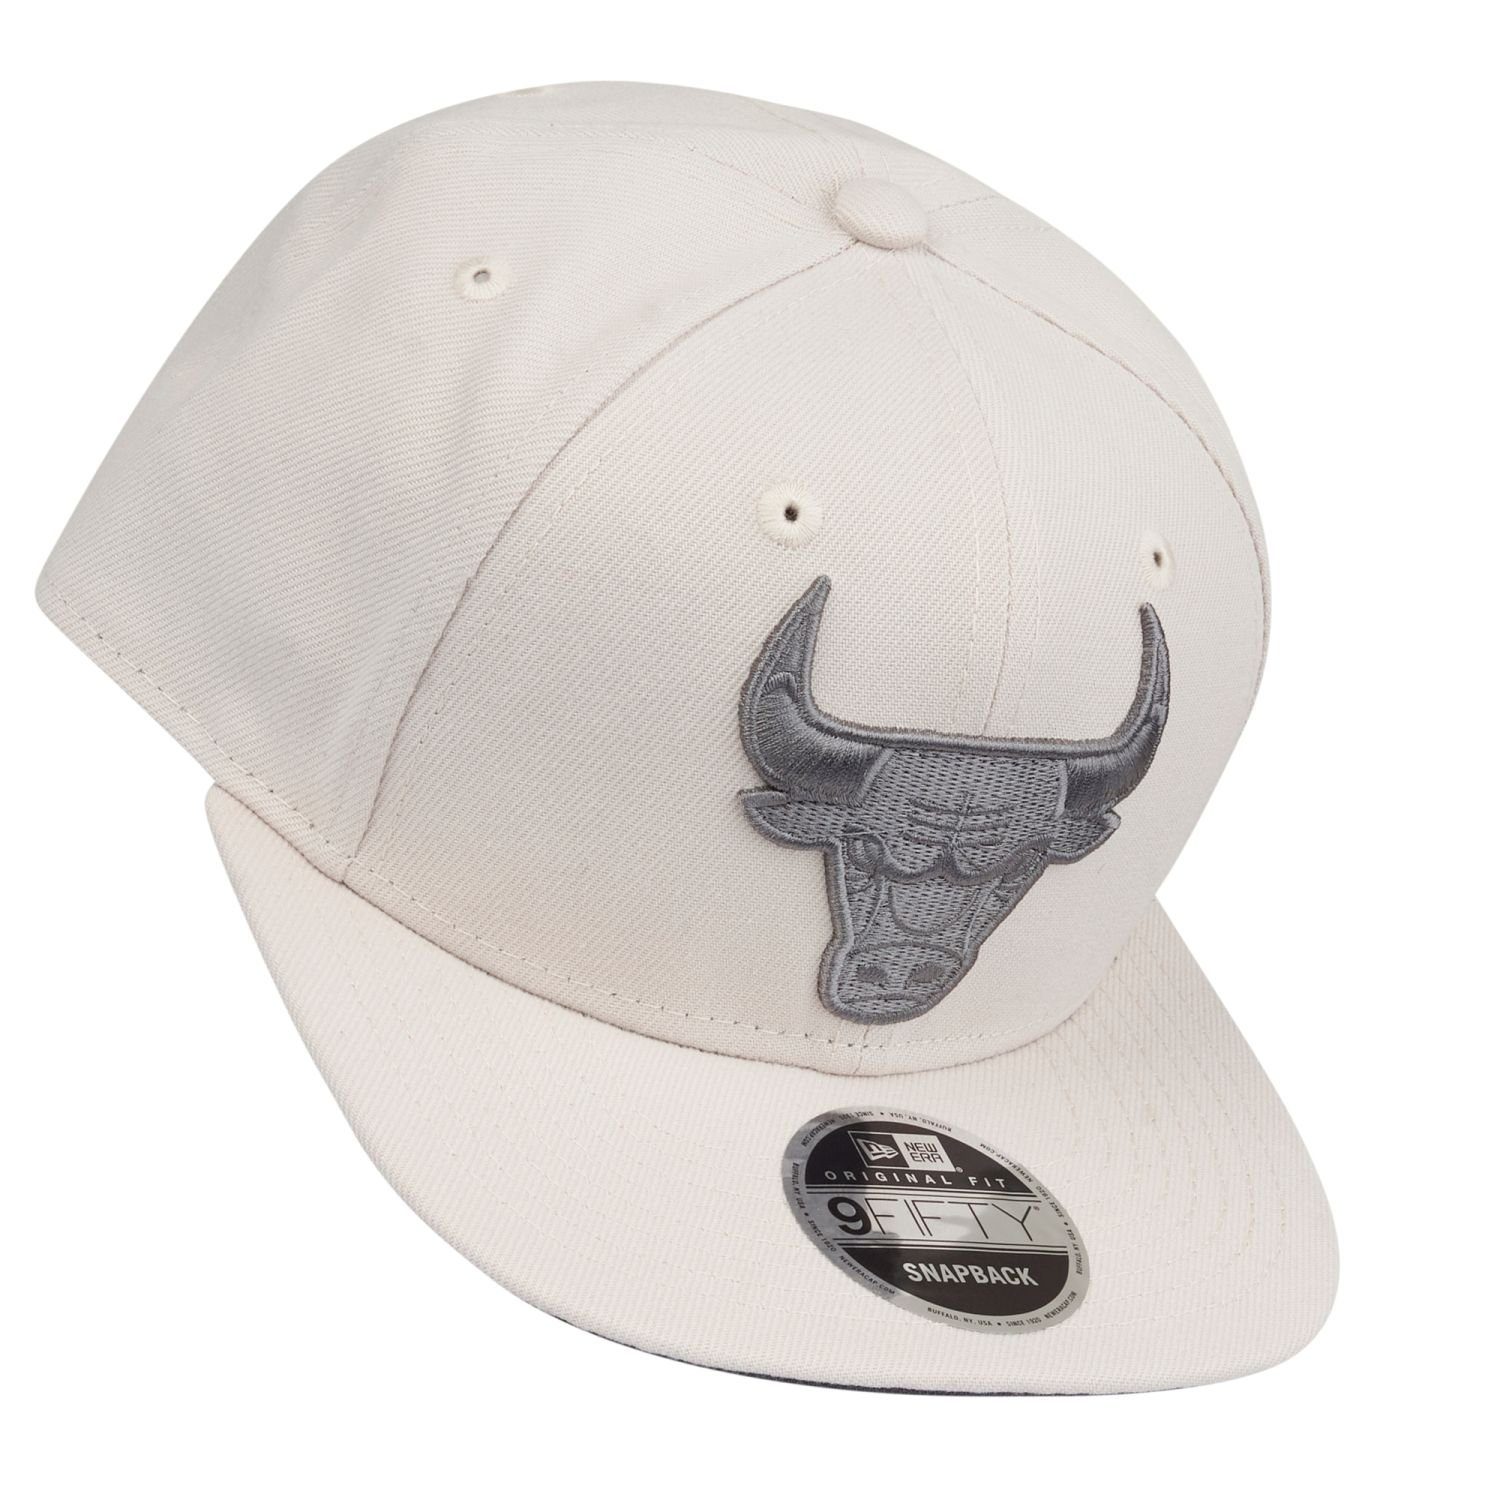 New Bulls Era Original Chicago Snapback 9Fifty Cap